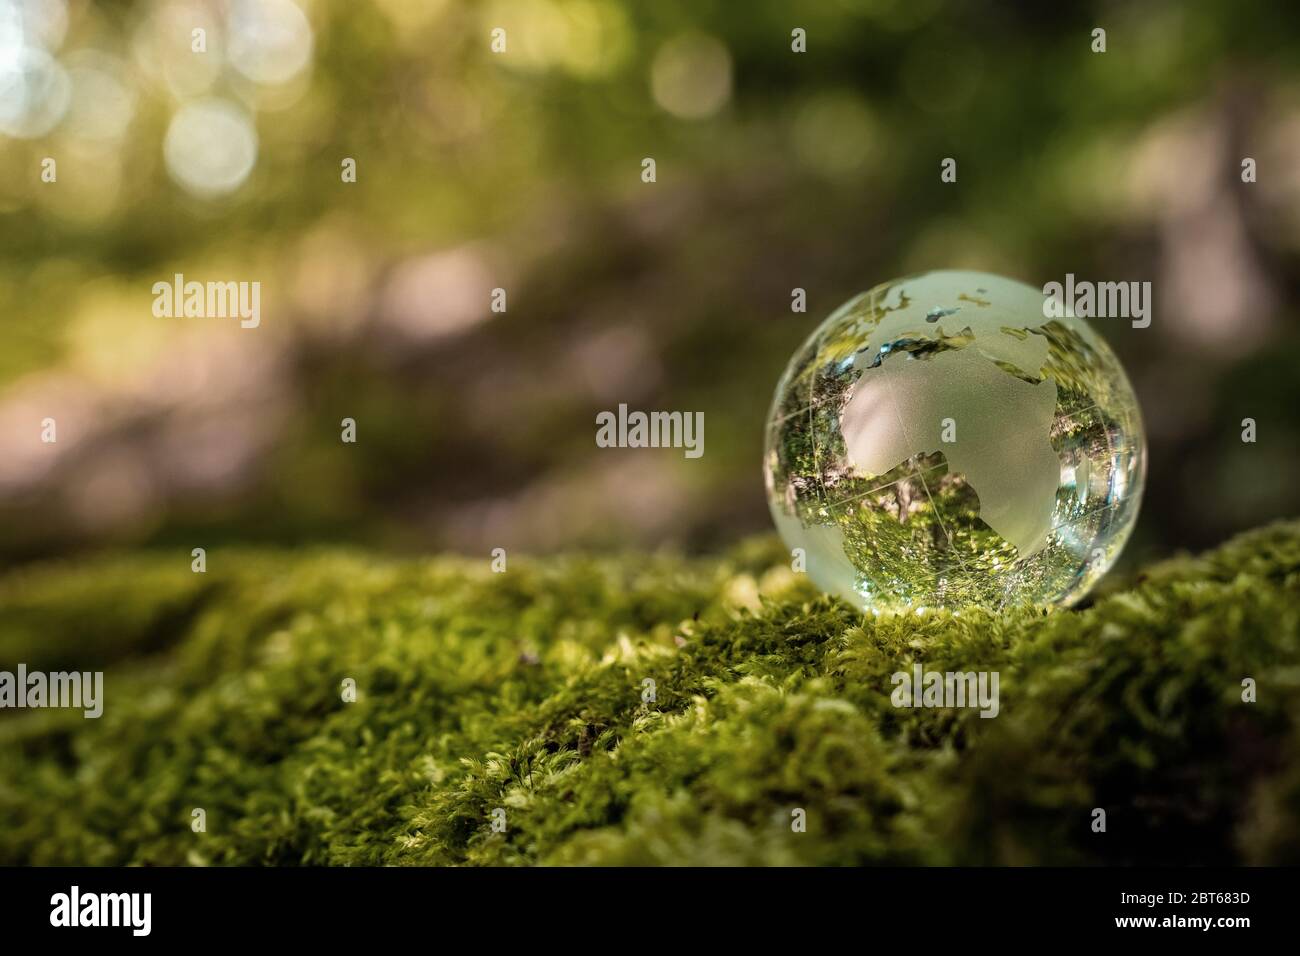 La notion de conservation de l'environnement. Close up of glass globe dans la forêt avec copie espace Banque D'Images